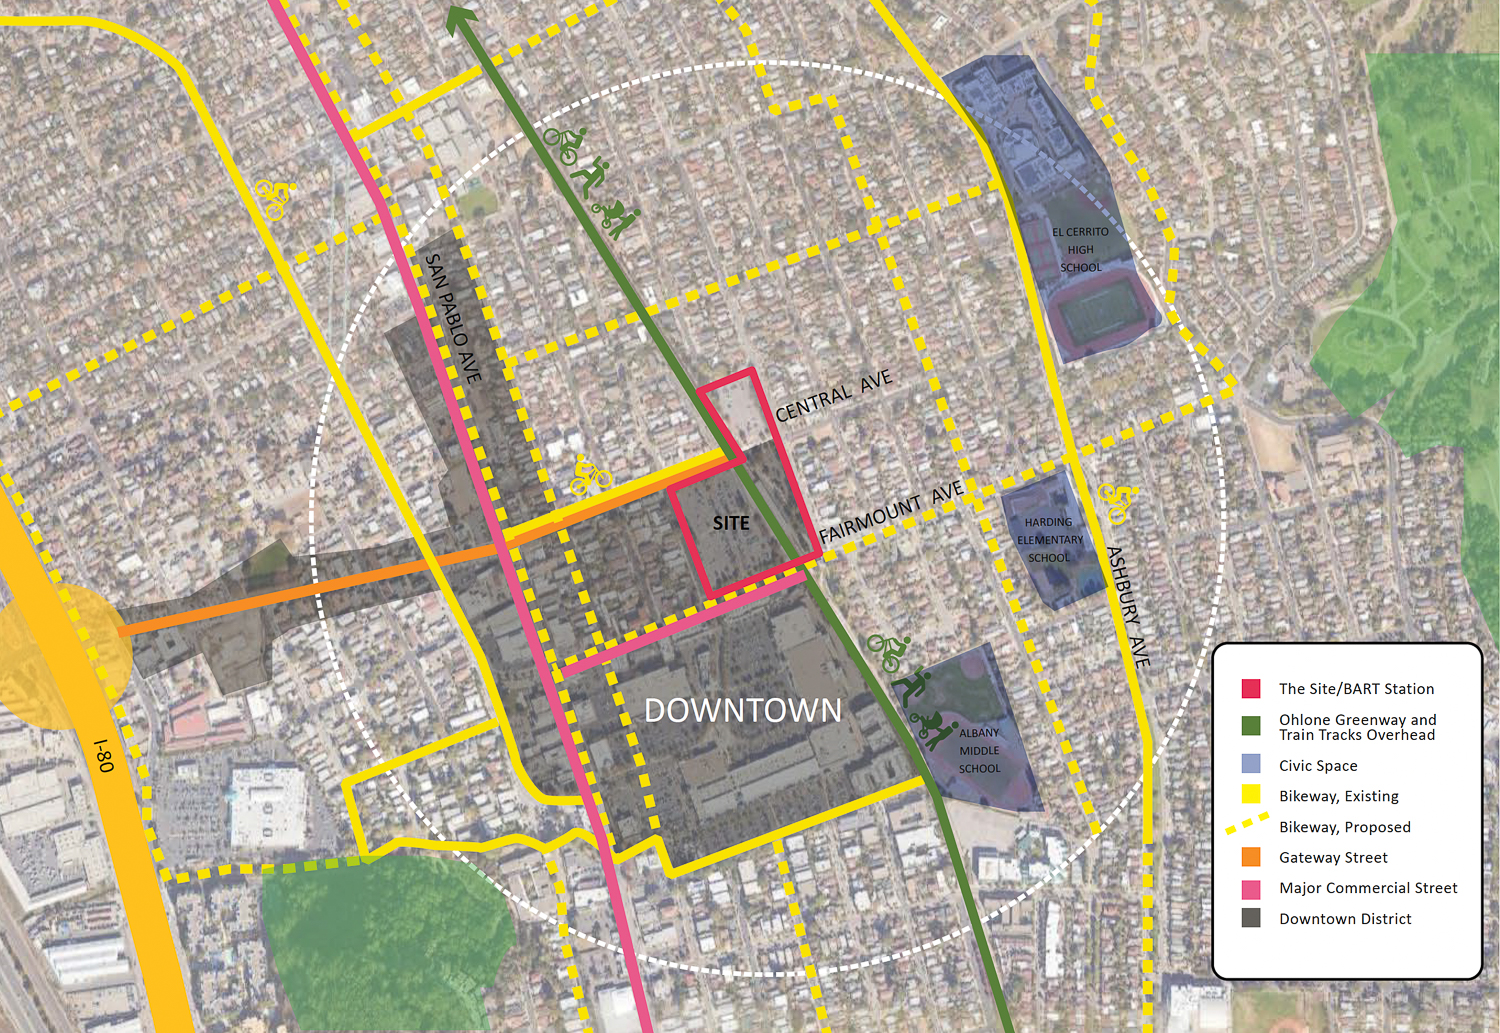 El Cerrito Plaza site and area context map